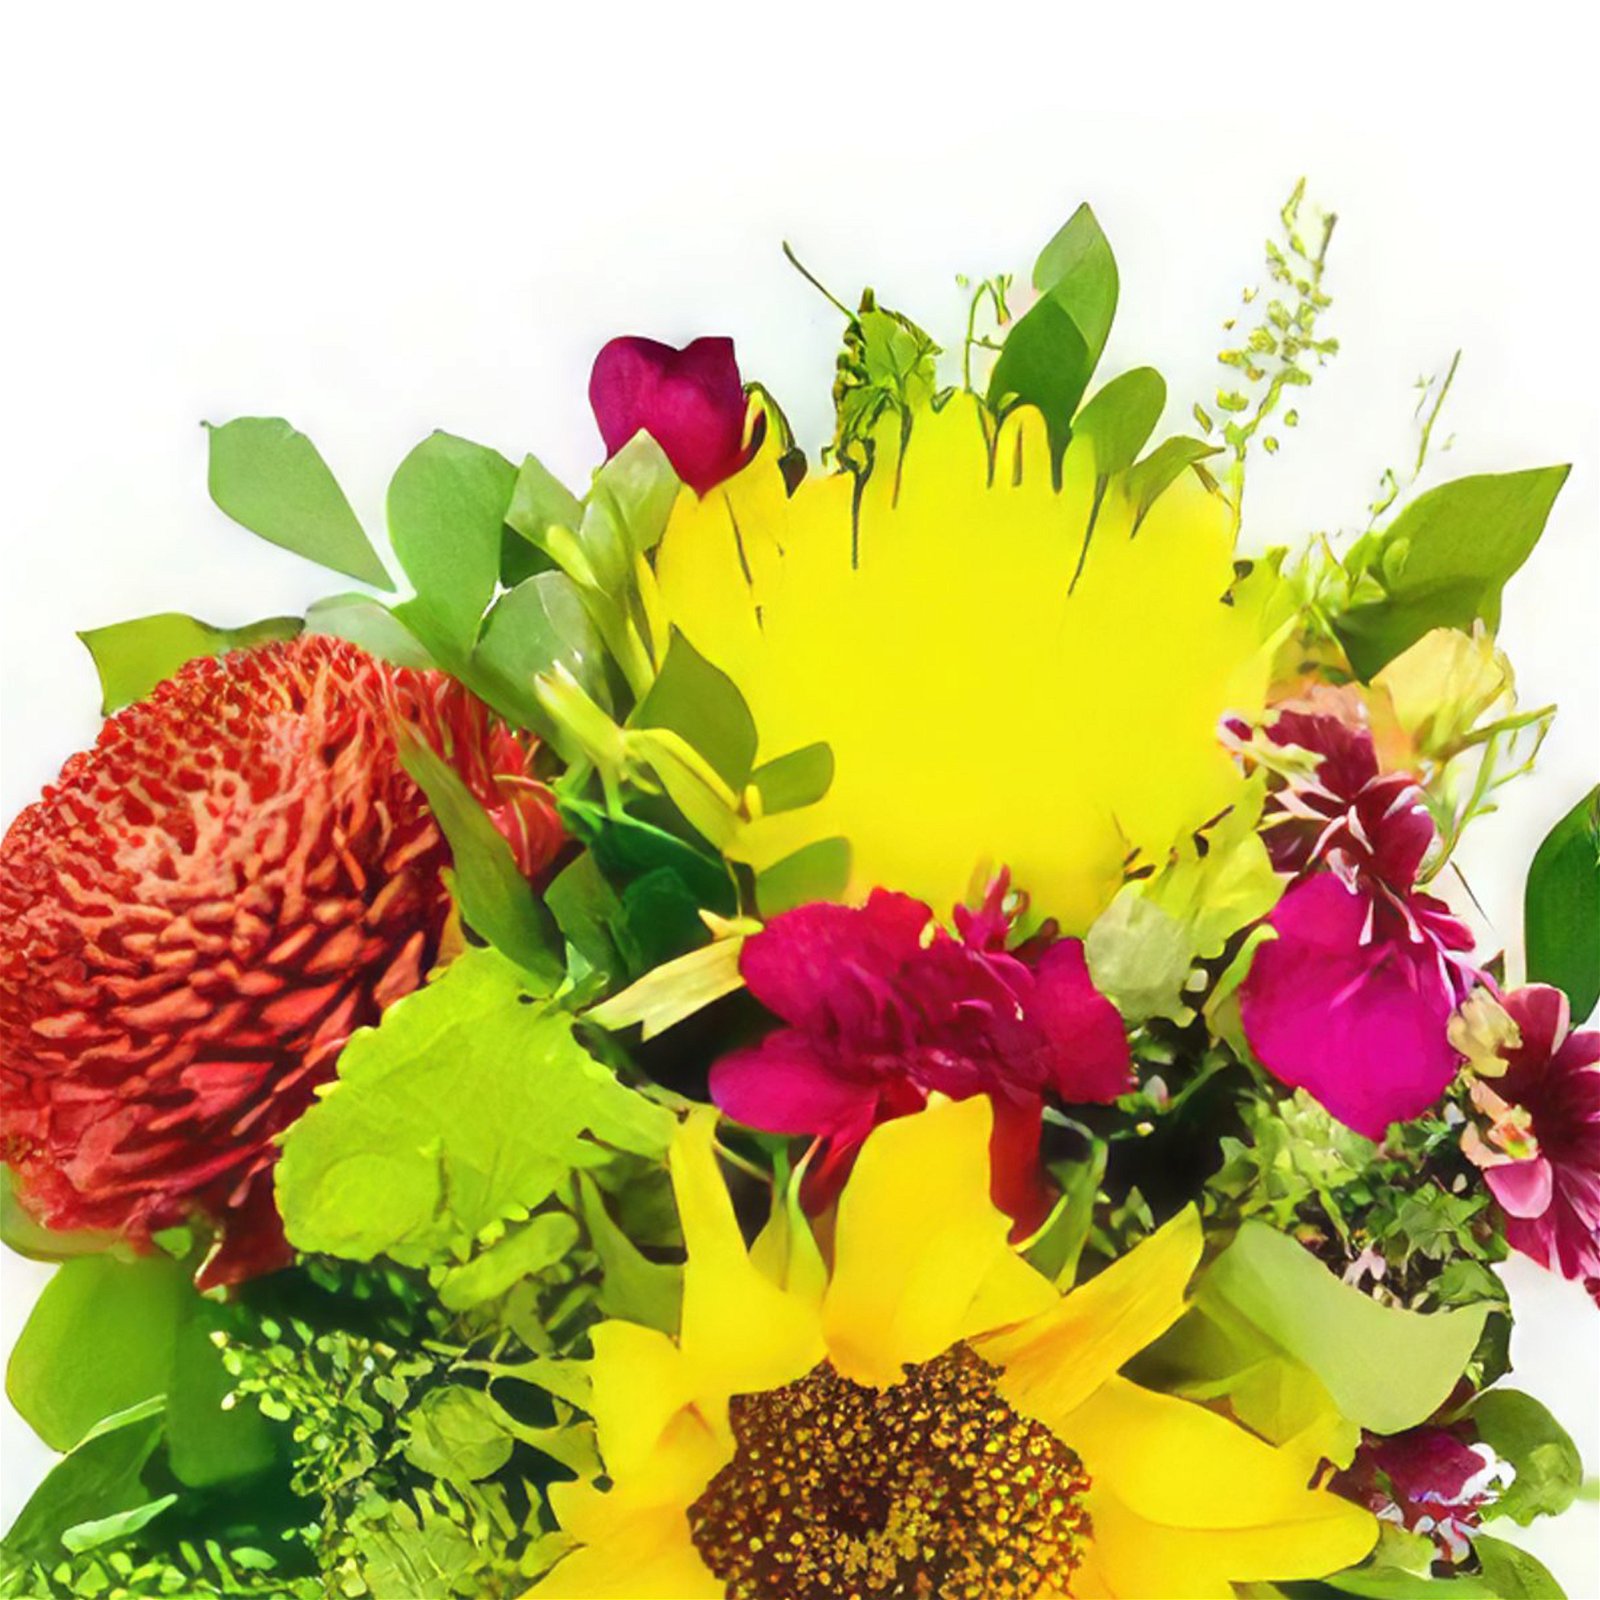 fleuriste fleurs de Aridanes- Amour de printemps Bouquet/Arrangement floral